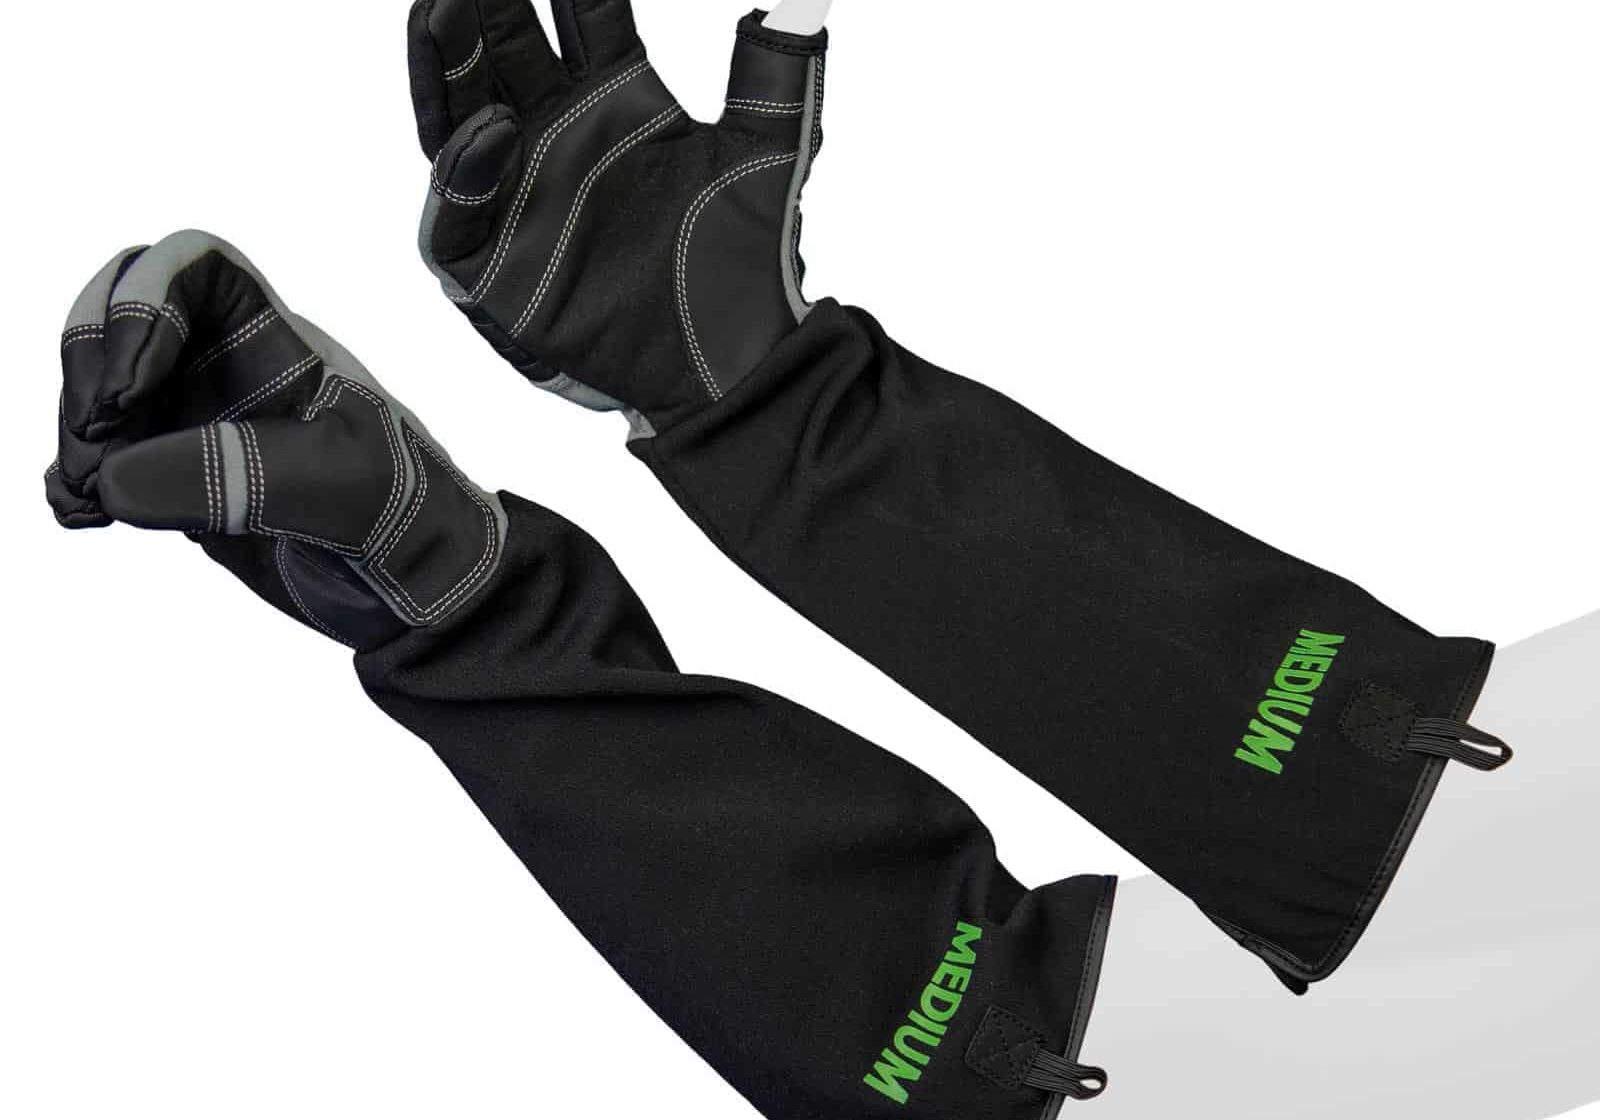 Both Gloves